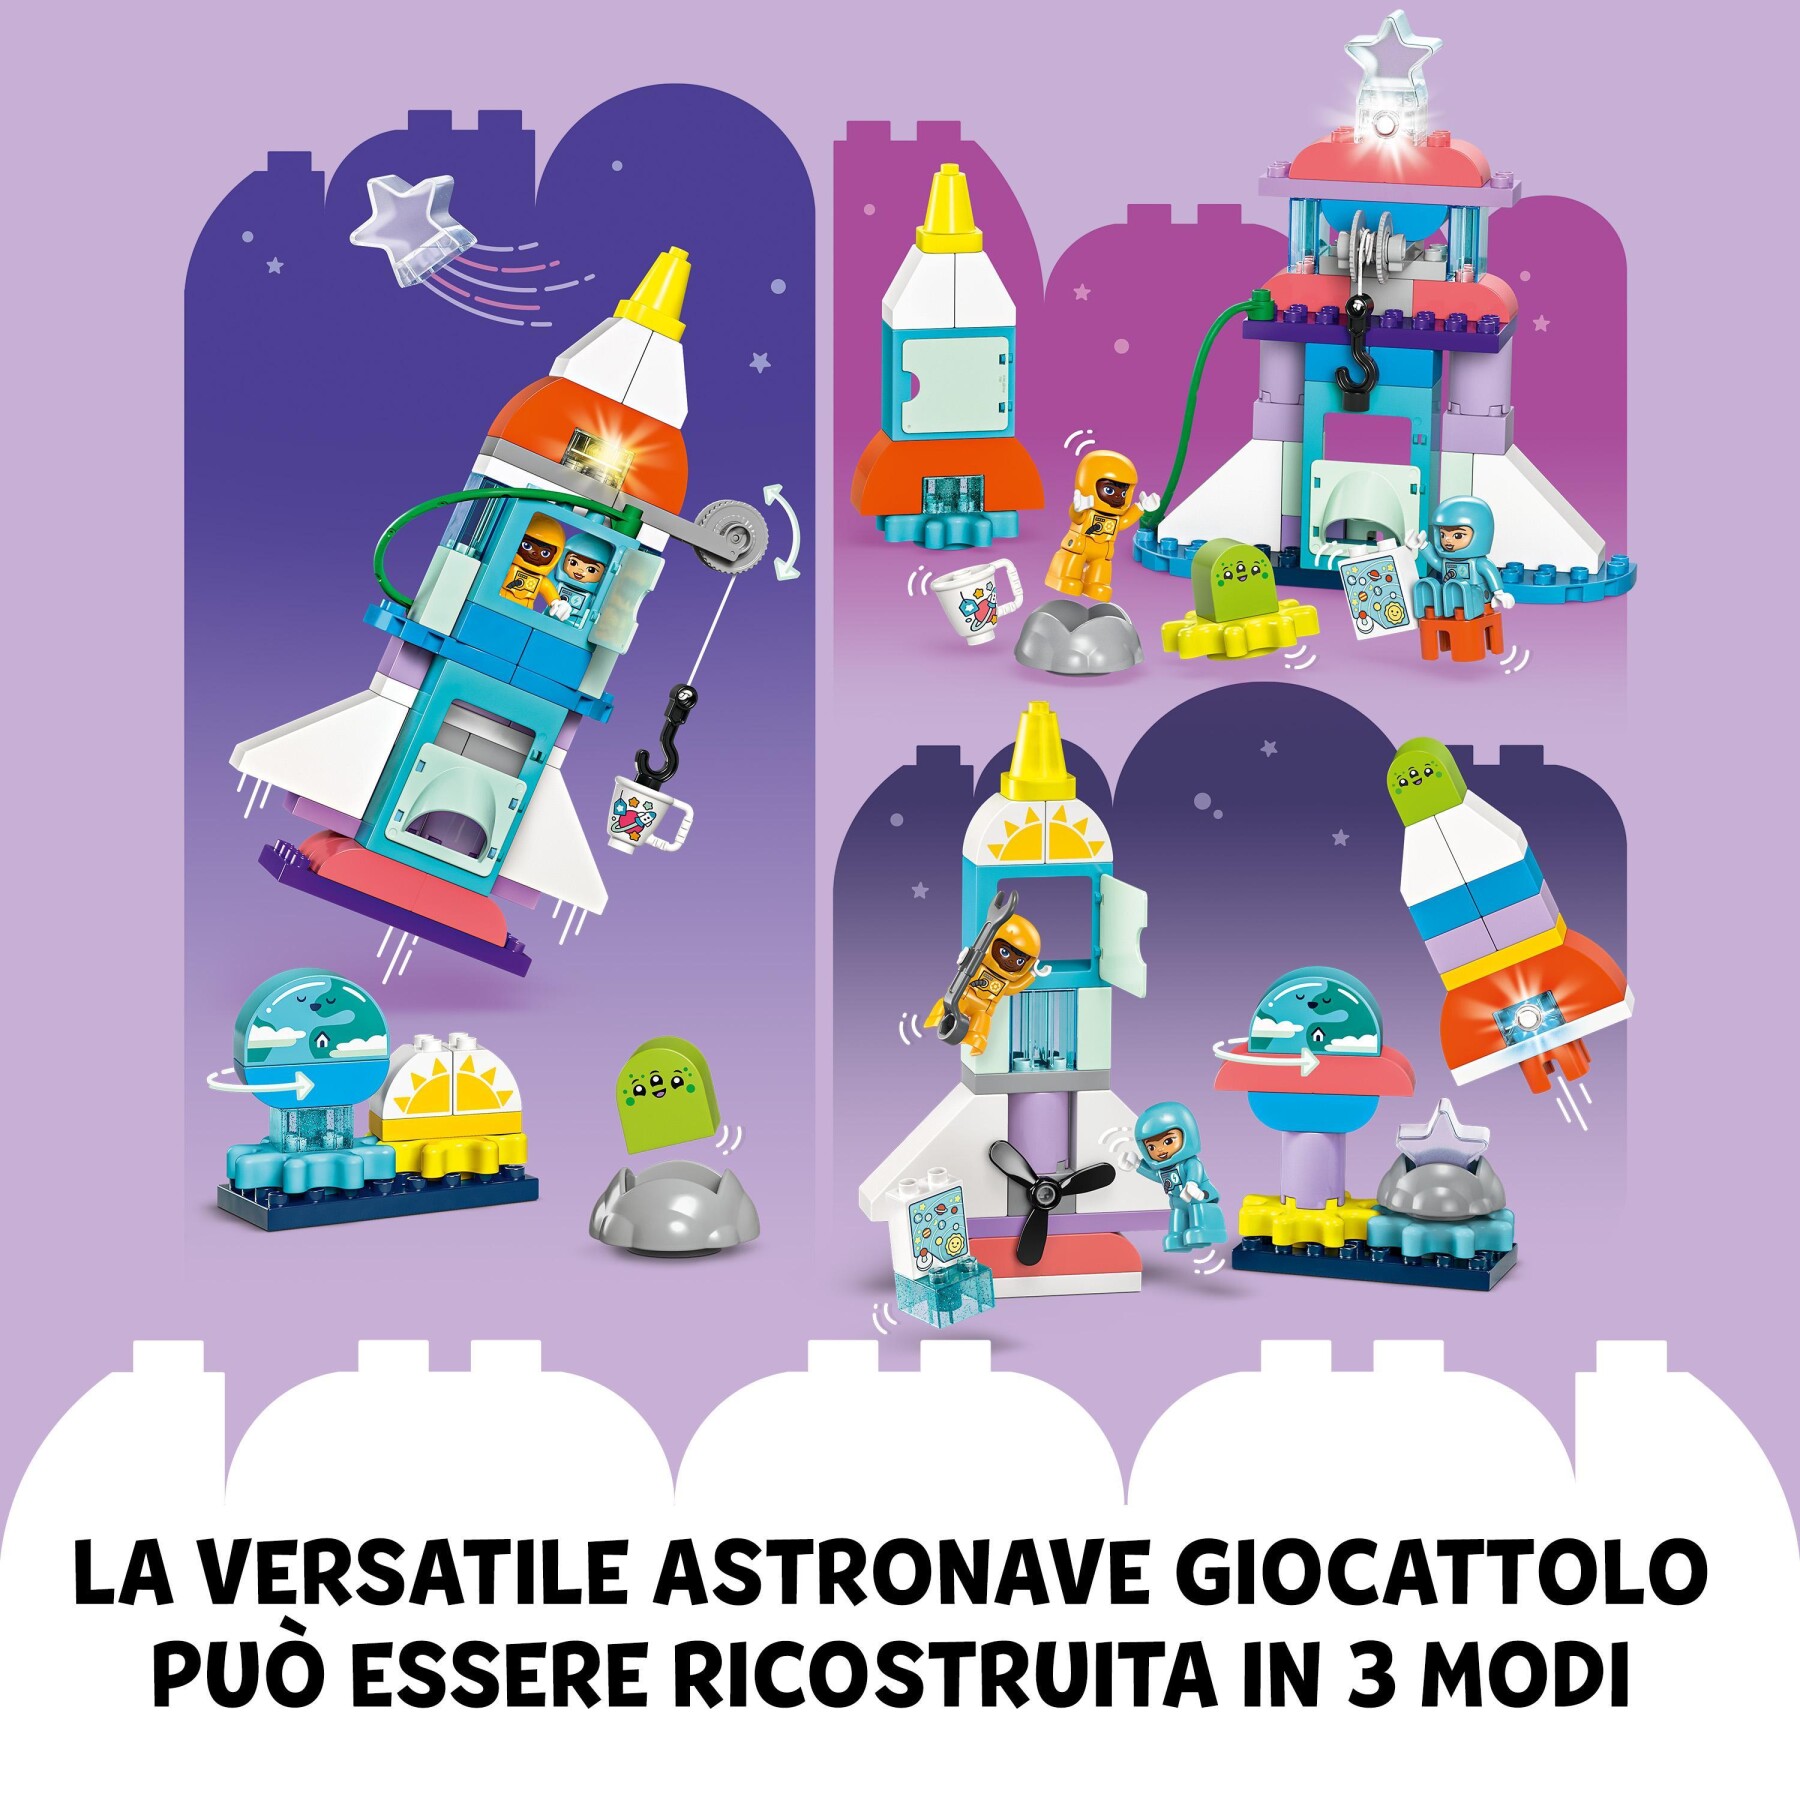 Lego duplo 10422 avventura dello space shuttle 3 in 1, astronave giocattolo didattica, gioco educativo per bambini di 3+ anni - LEGO DUPLO